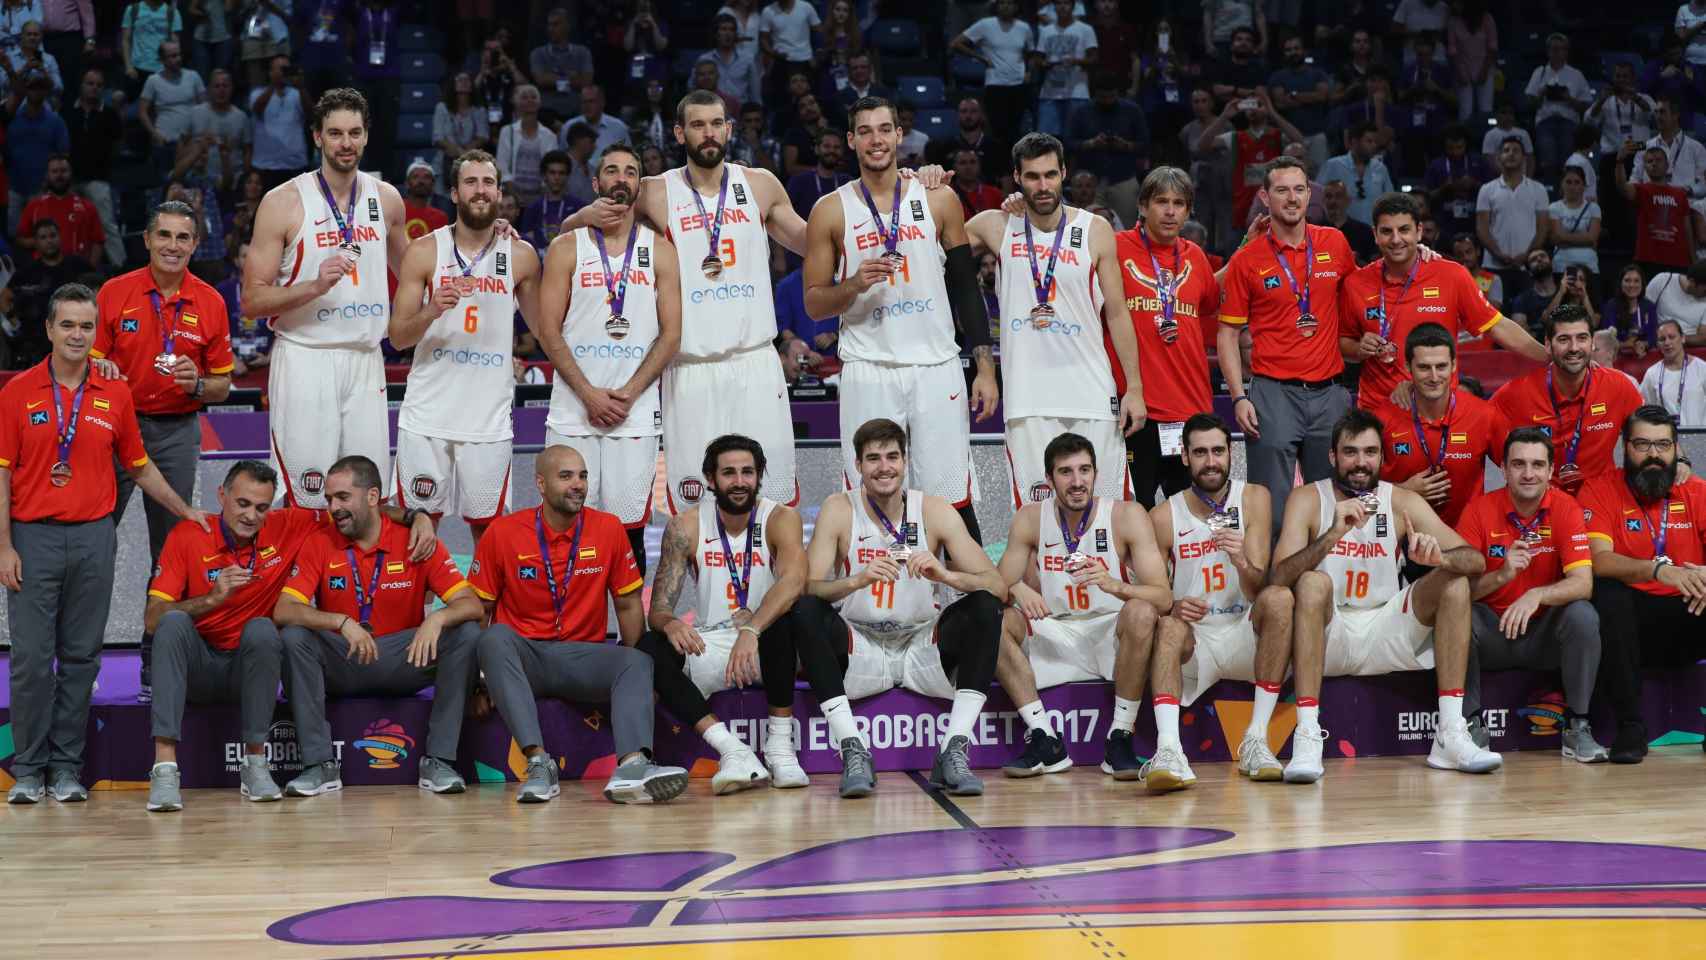 ¿Cuántos jugadores que conquistaron el bronce en el Eurobasket irán a las Ventanas?